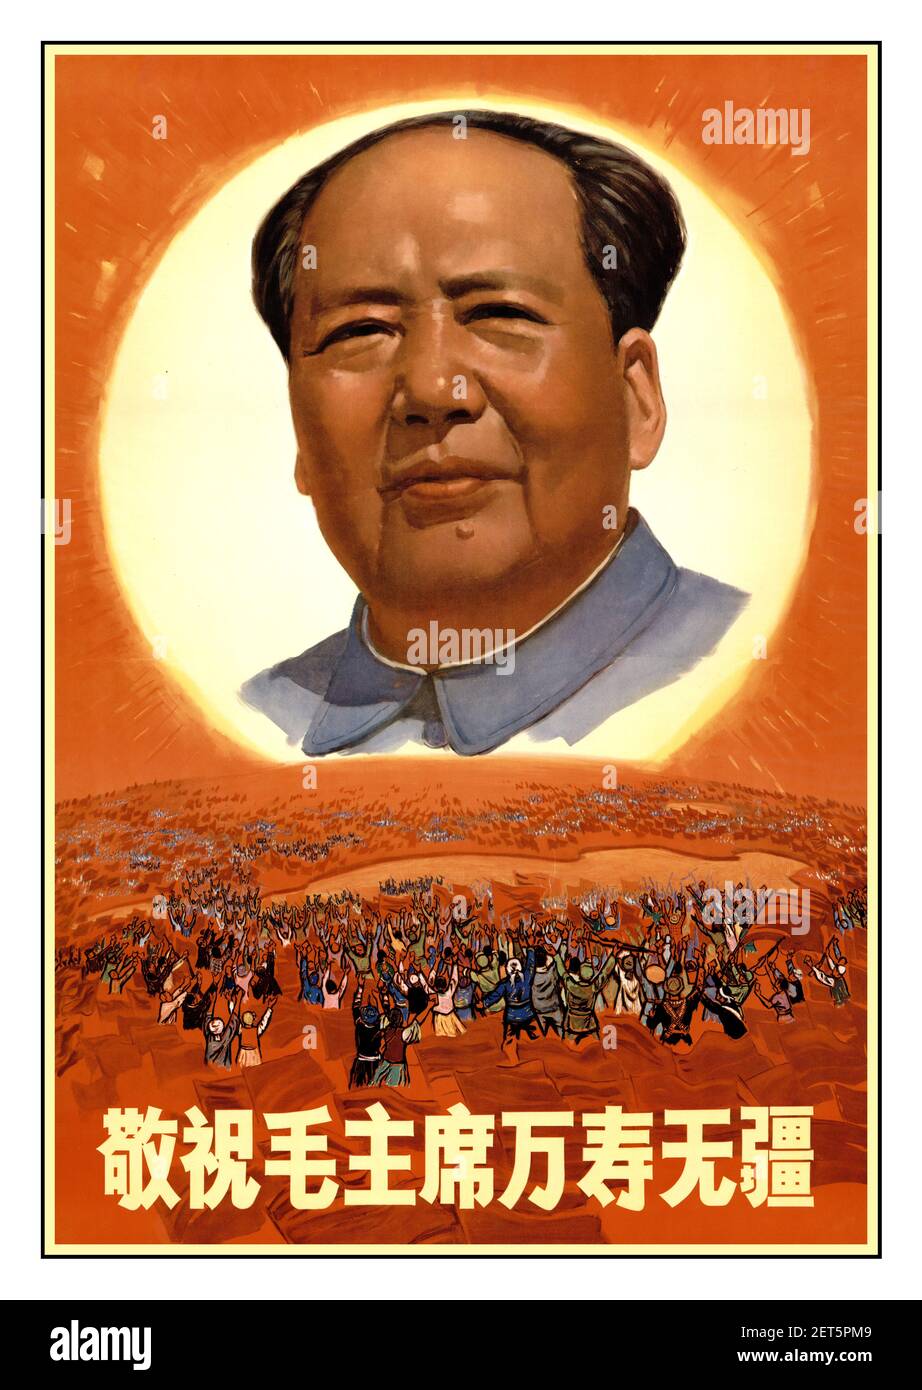 Révolution culturelle chinoise des années 1960 « avec tout le respect nécessaire, nous souhaitons au président Mao une longue vie sans frontières » 1968 le président Mao rend hommage à Mao Tsé-toung (毛泽东) (1893-1976), homme d’État Banque D'Images